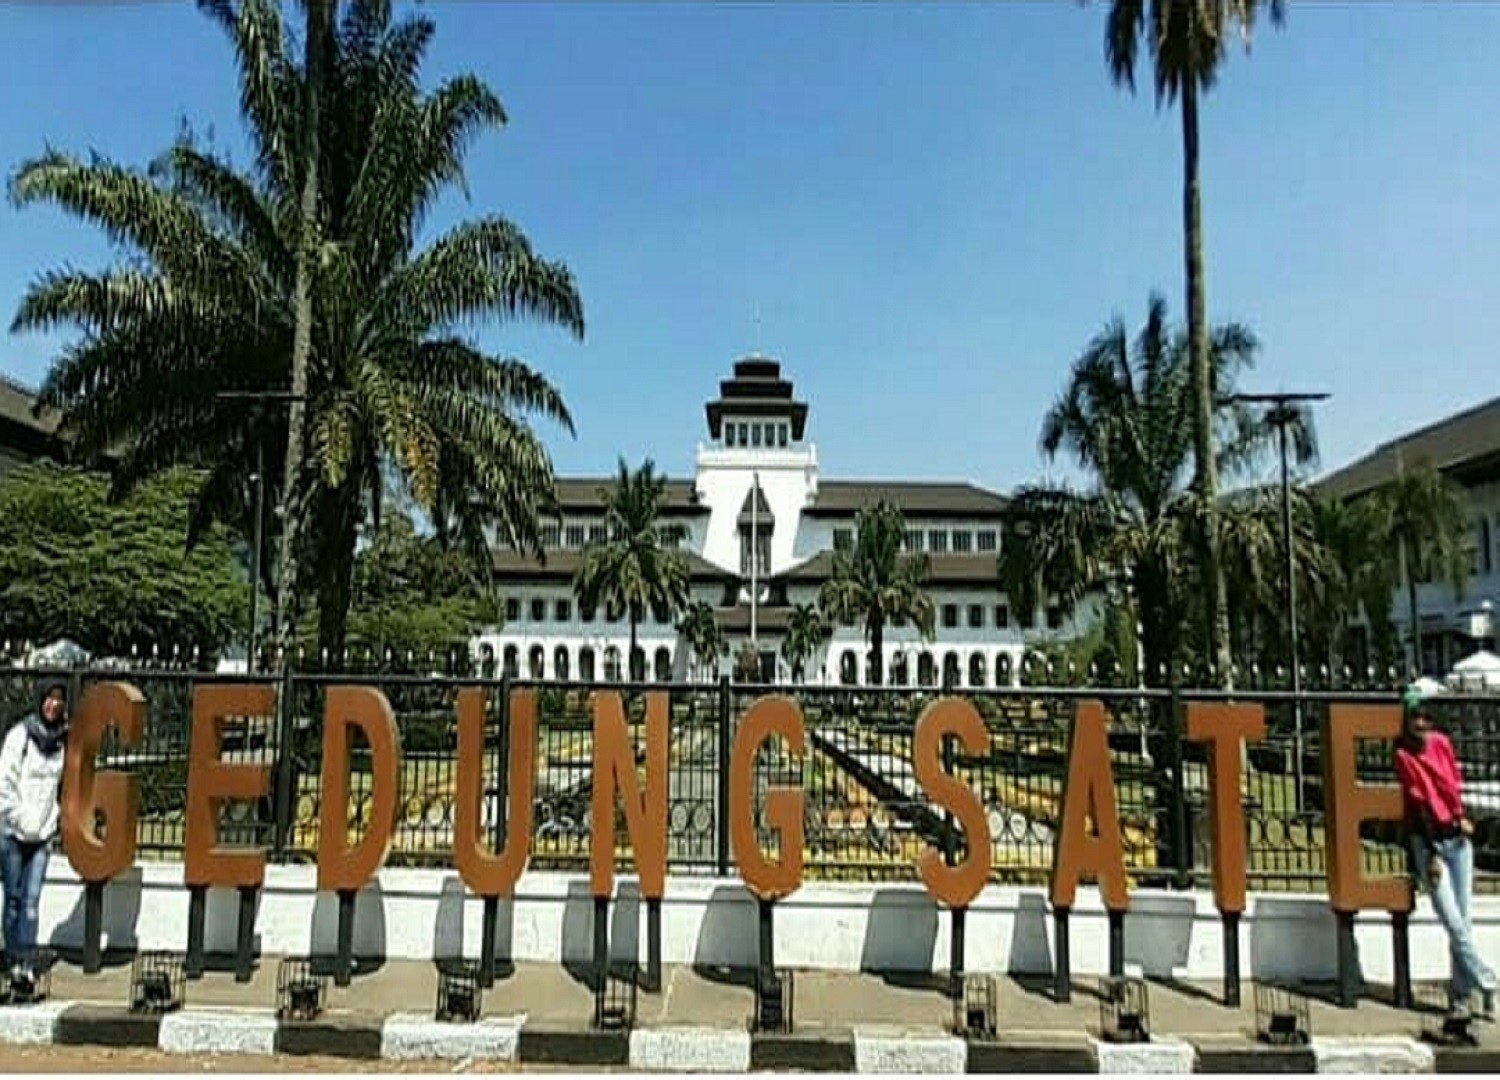 Bagian depan Gedung Sate yang sering dijadikan latar berfoto wisatawan yang datang ke kota Bandung